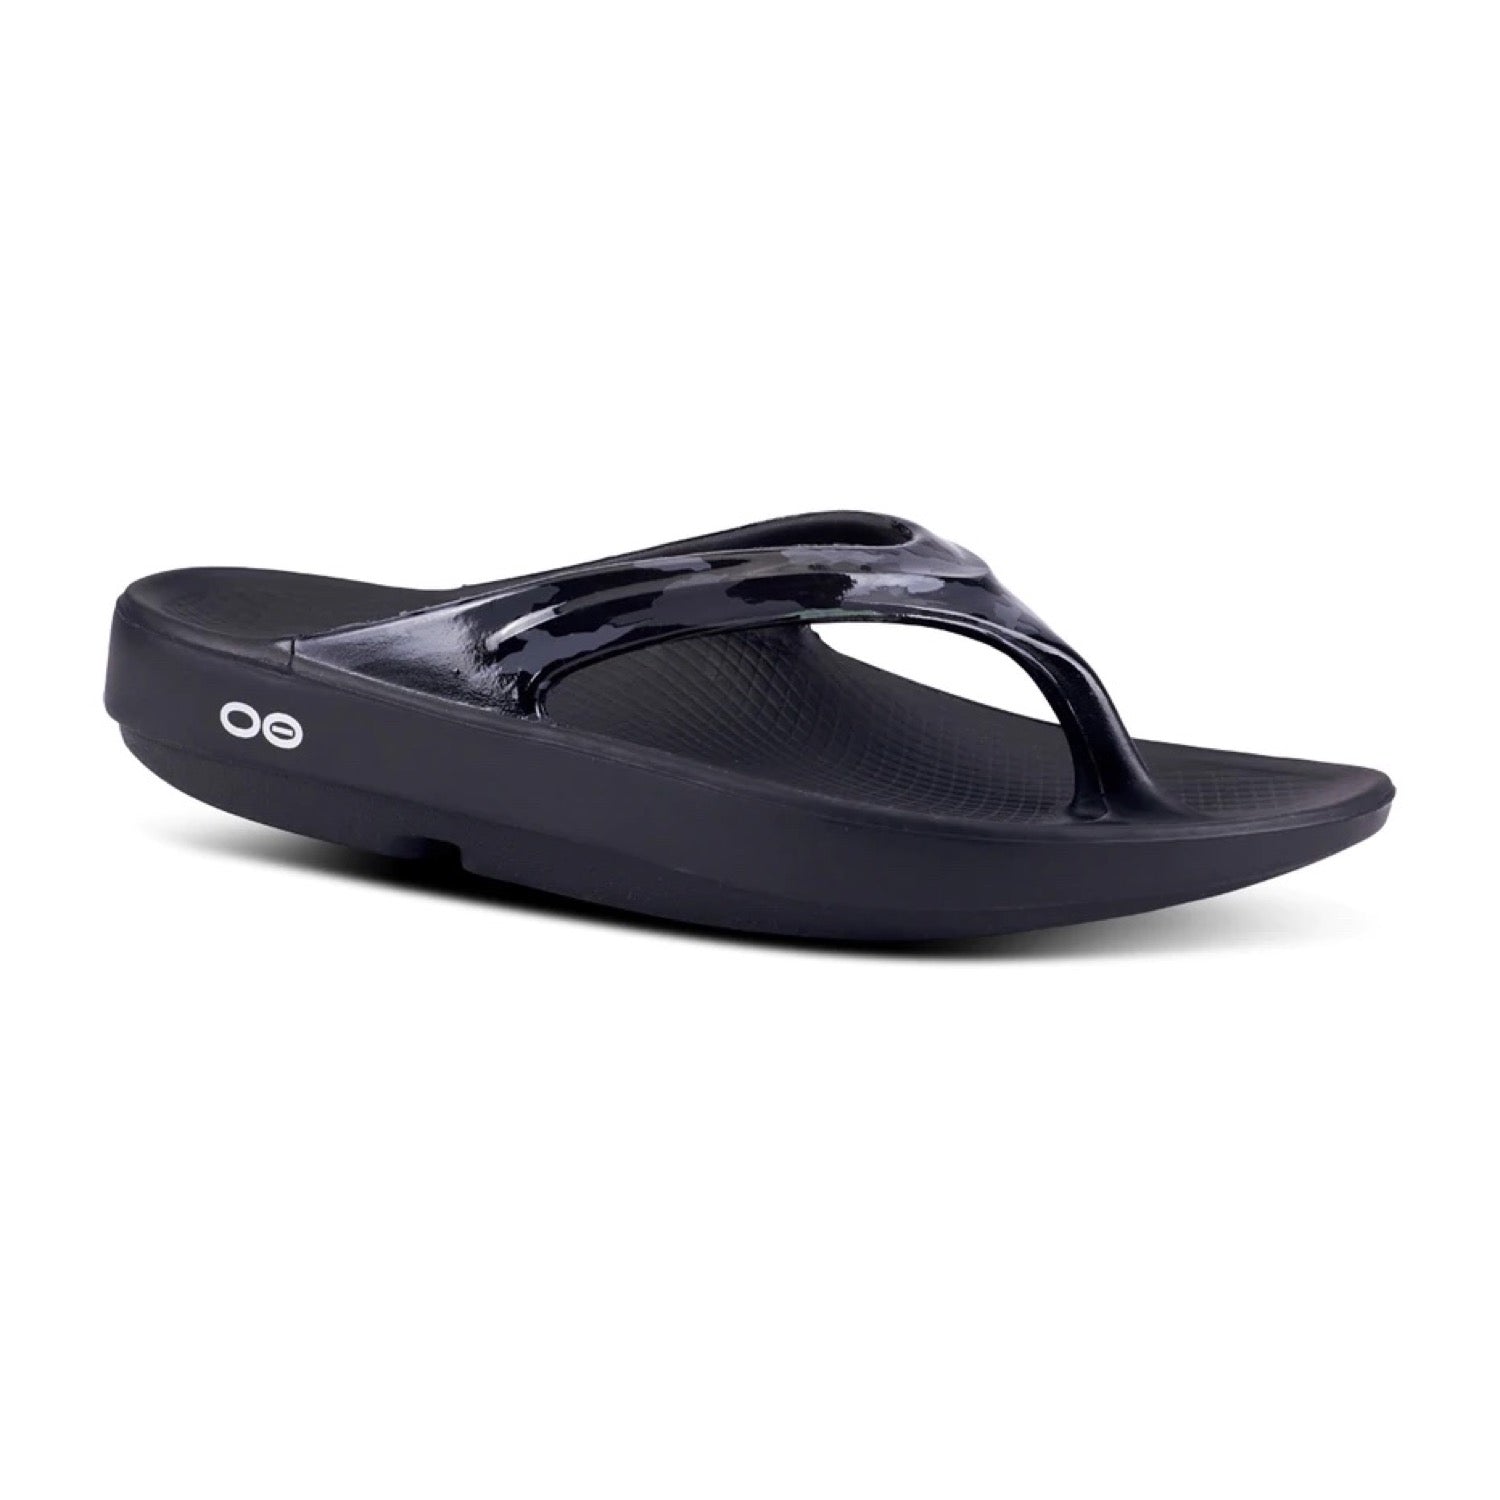 OOlala Limited Sandal